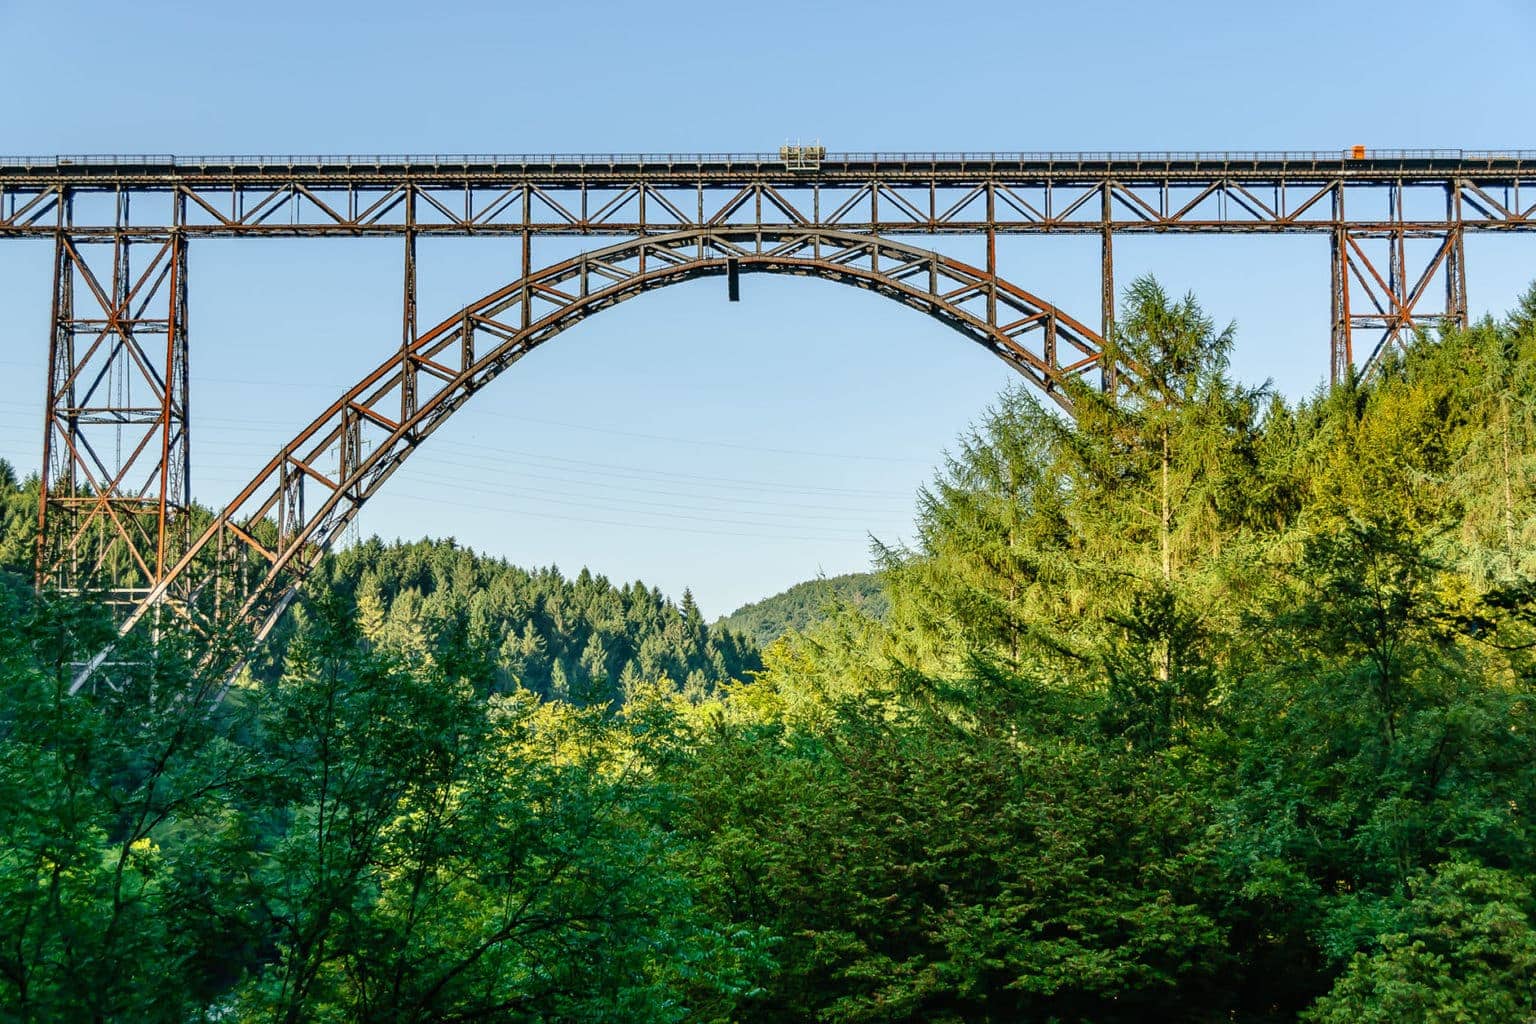 De Müngstener Brücke in het Bergische Land in Duitsland